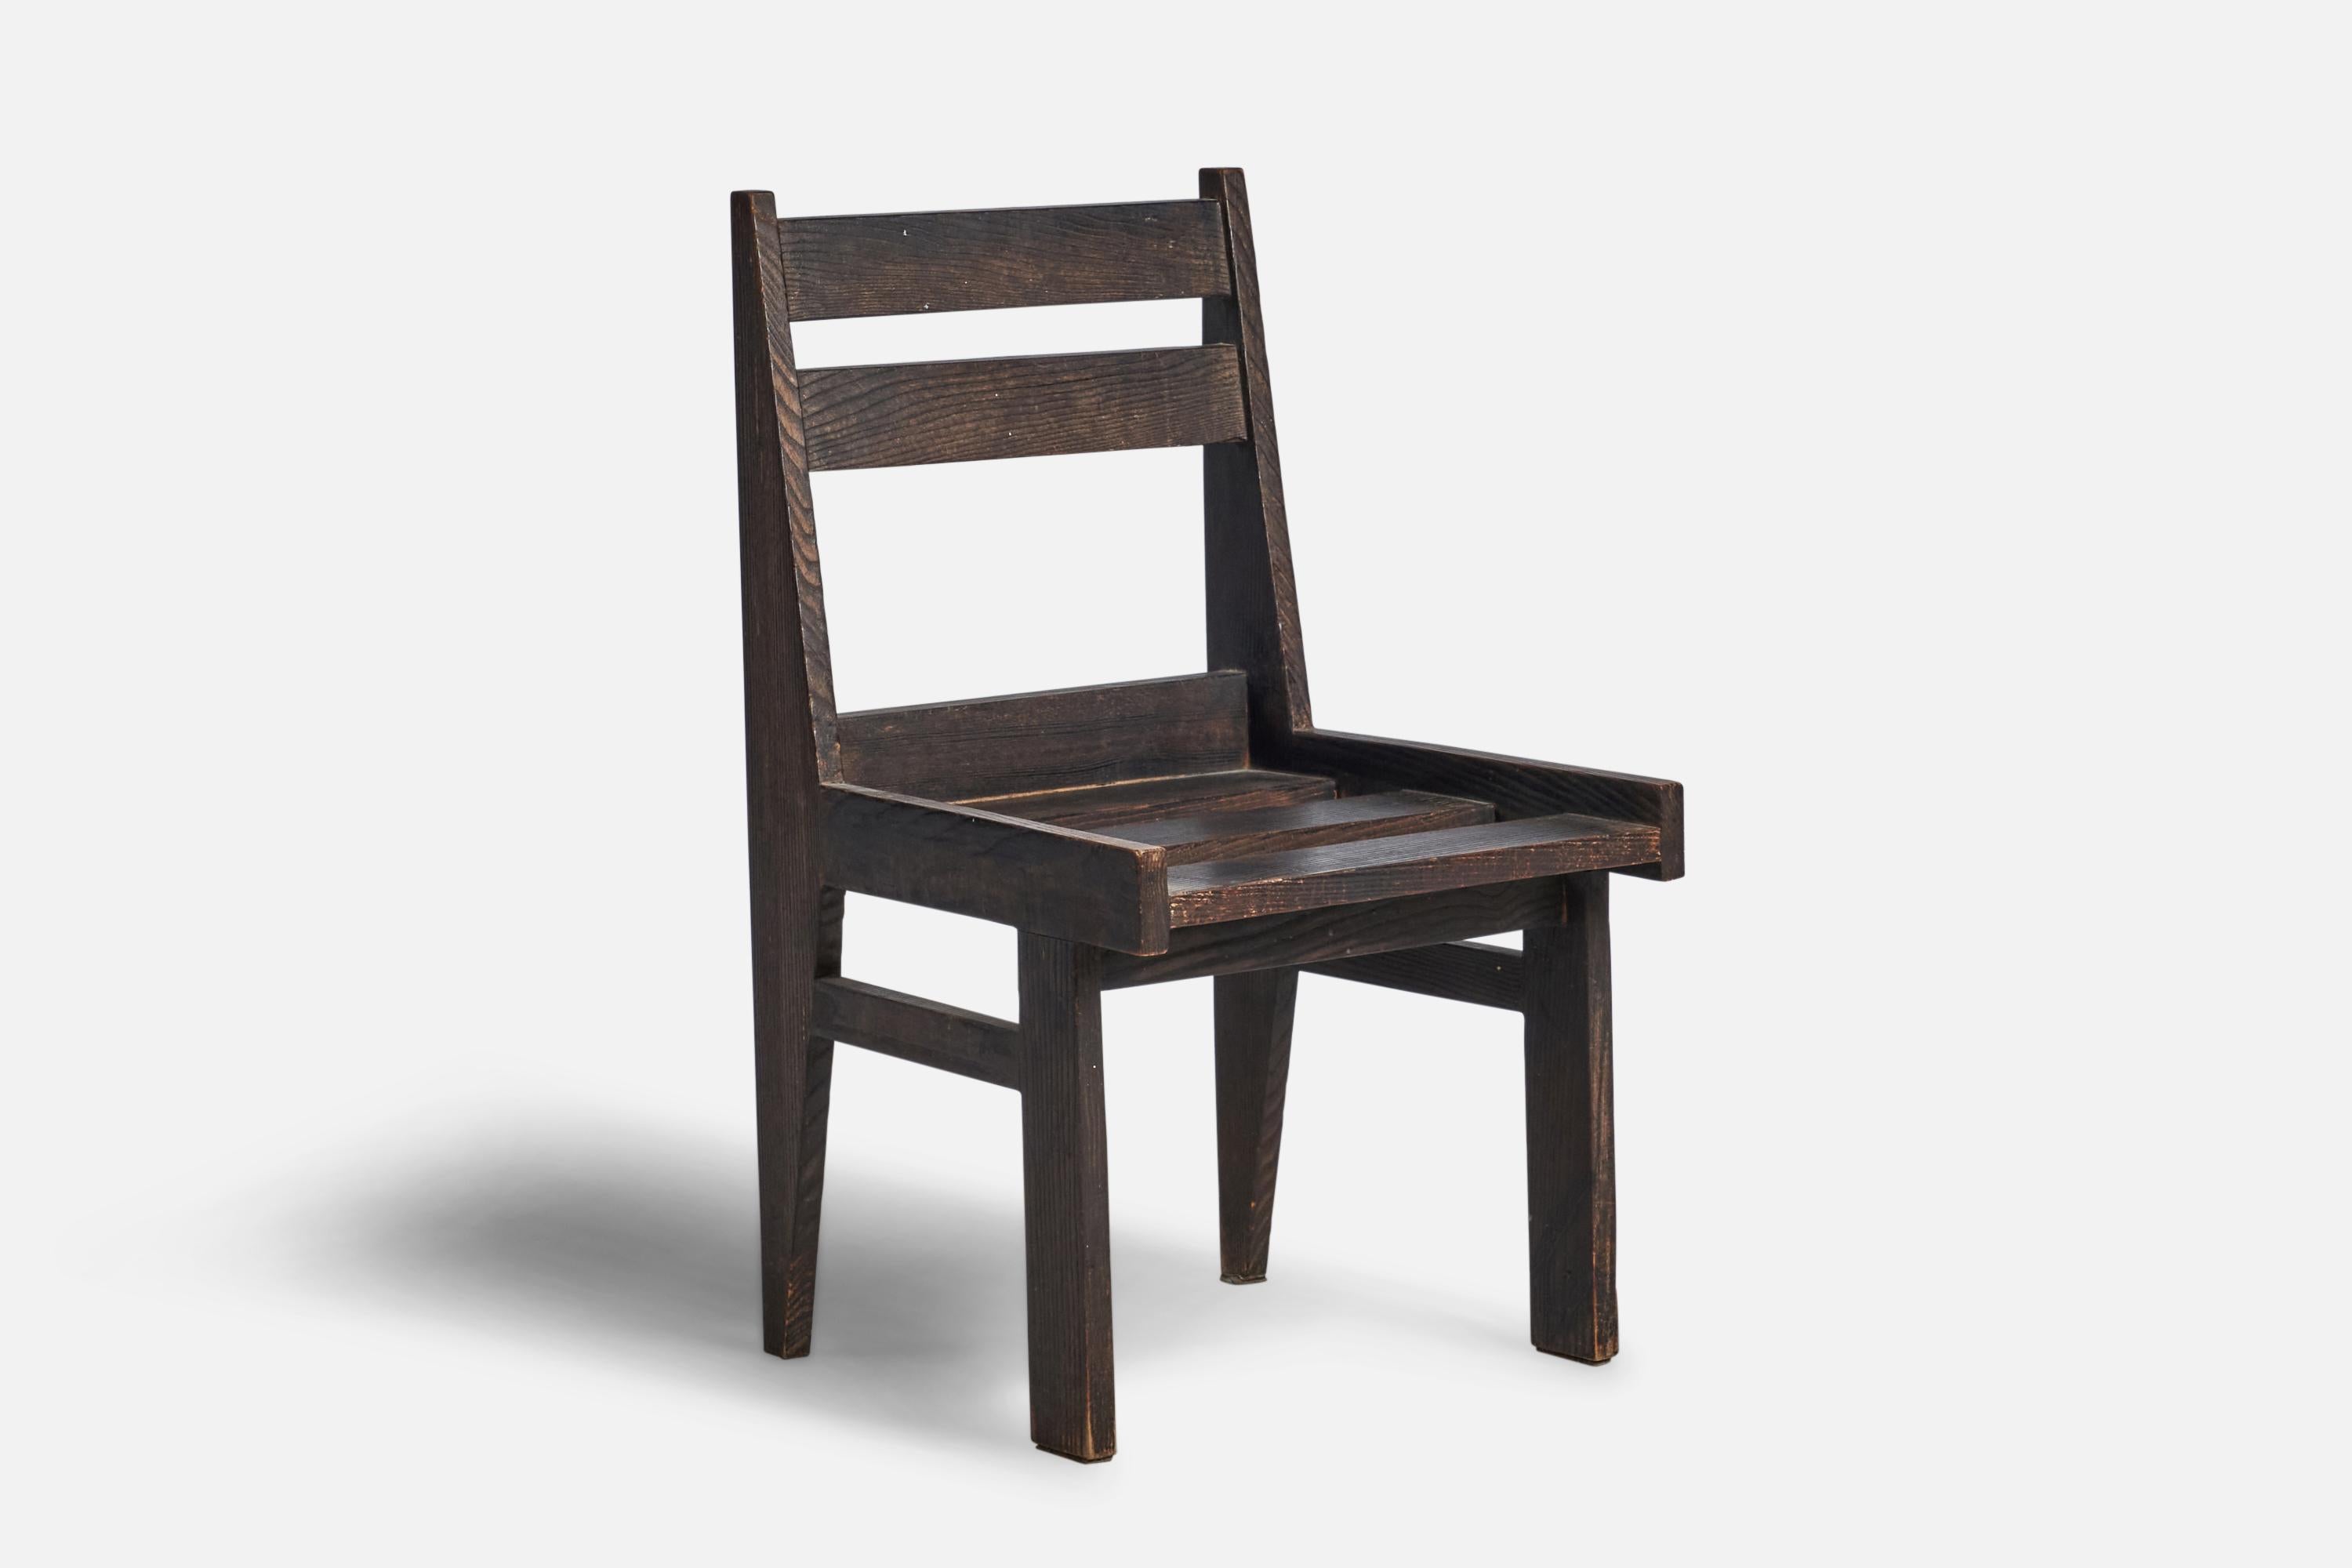 Chaise d'appoint en chêne teinté foncé, conçue et fabriquée aux Pays-Bas, vers les années 1940.

Hauteur d'assise de 14,75 pouces